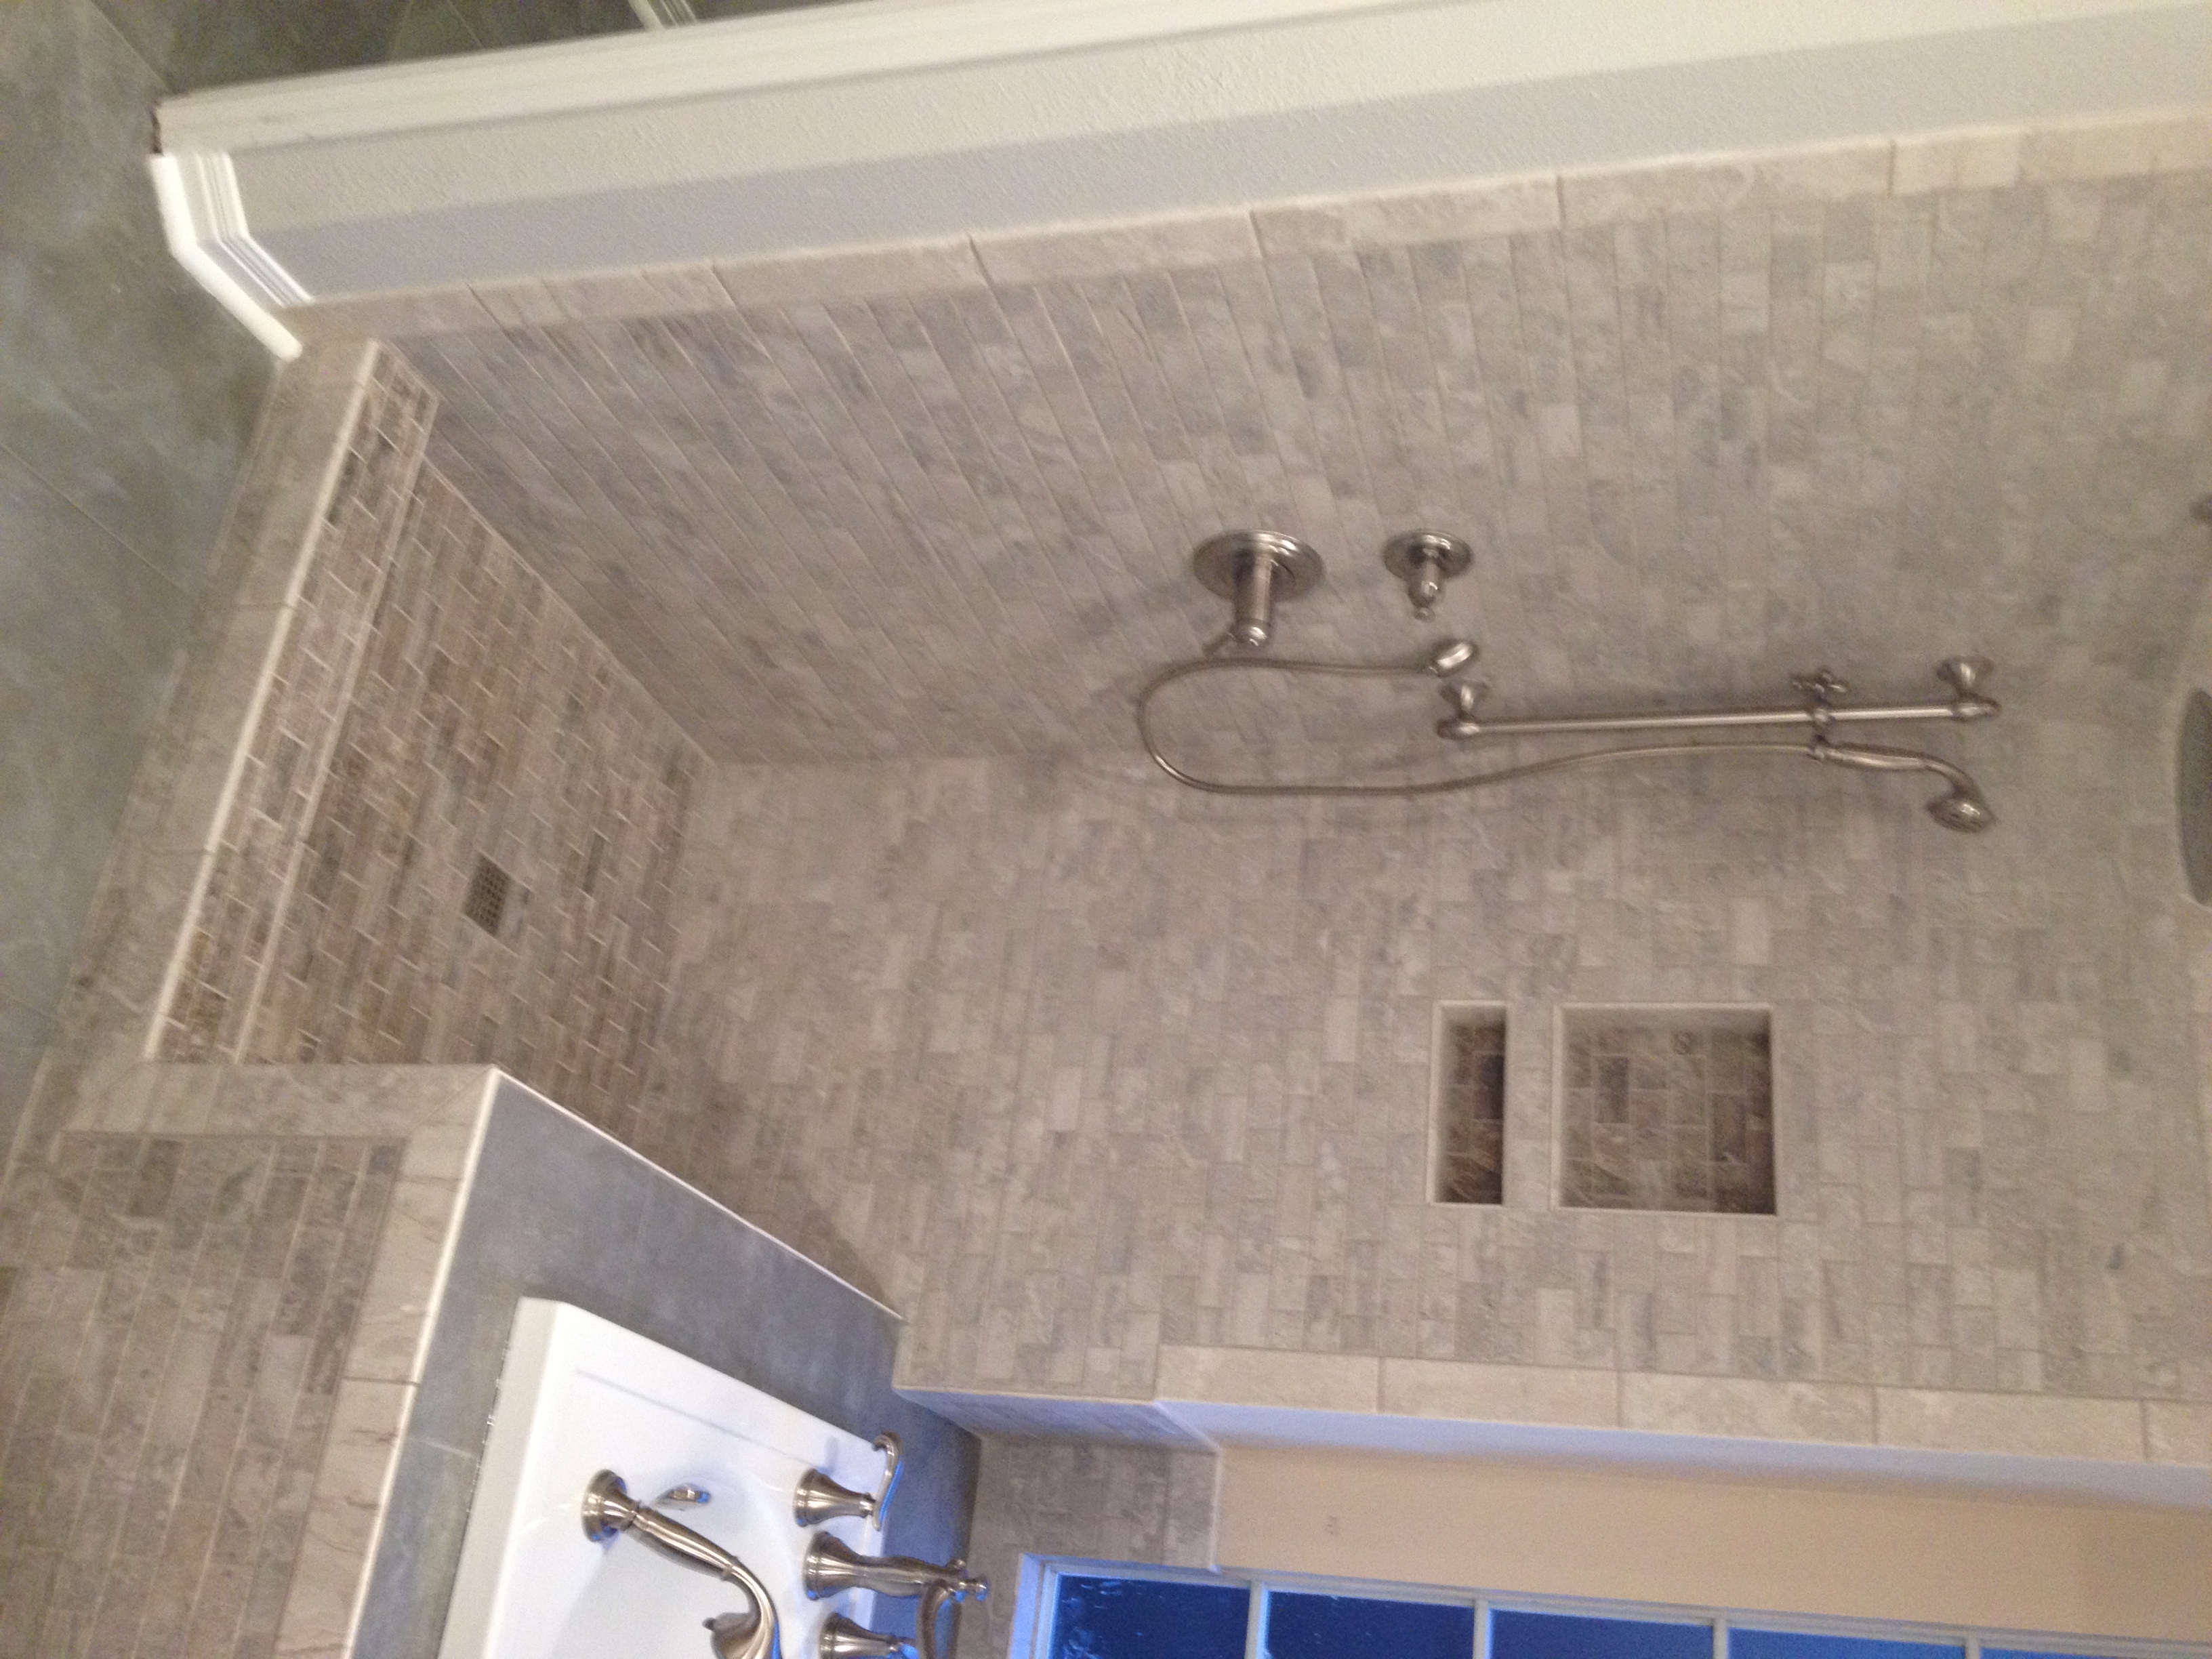 2 Master Bath Remodel Wedi Board for Tile Complete